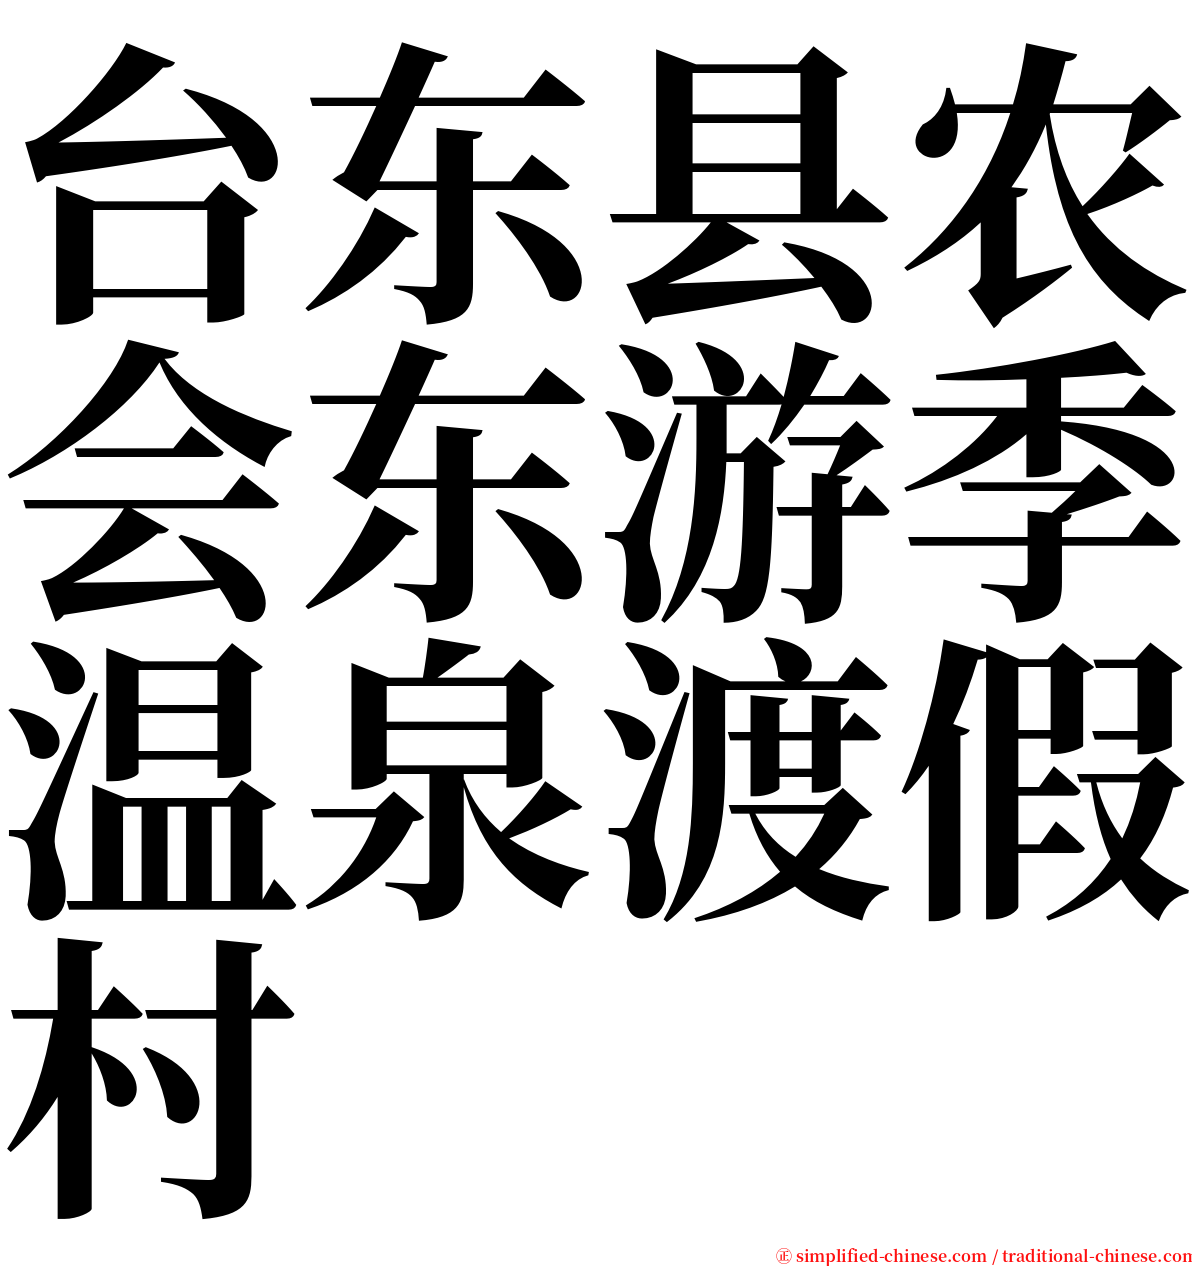 台东县农会东游季温泉渡假村 serif font